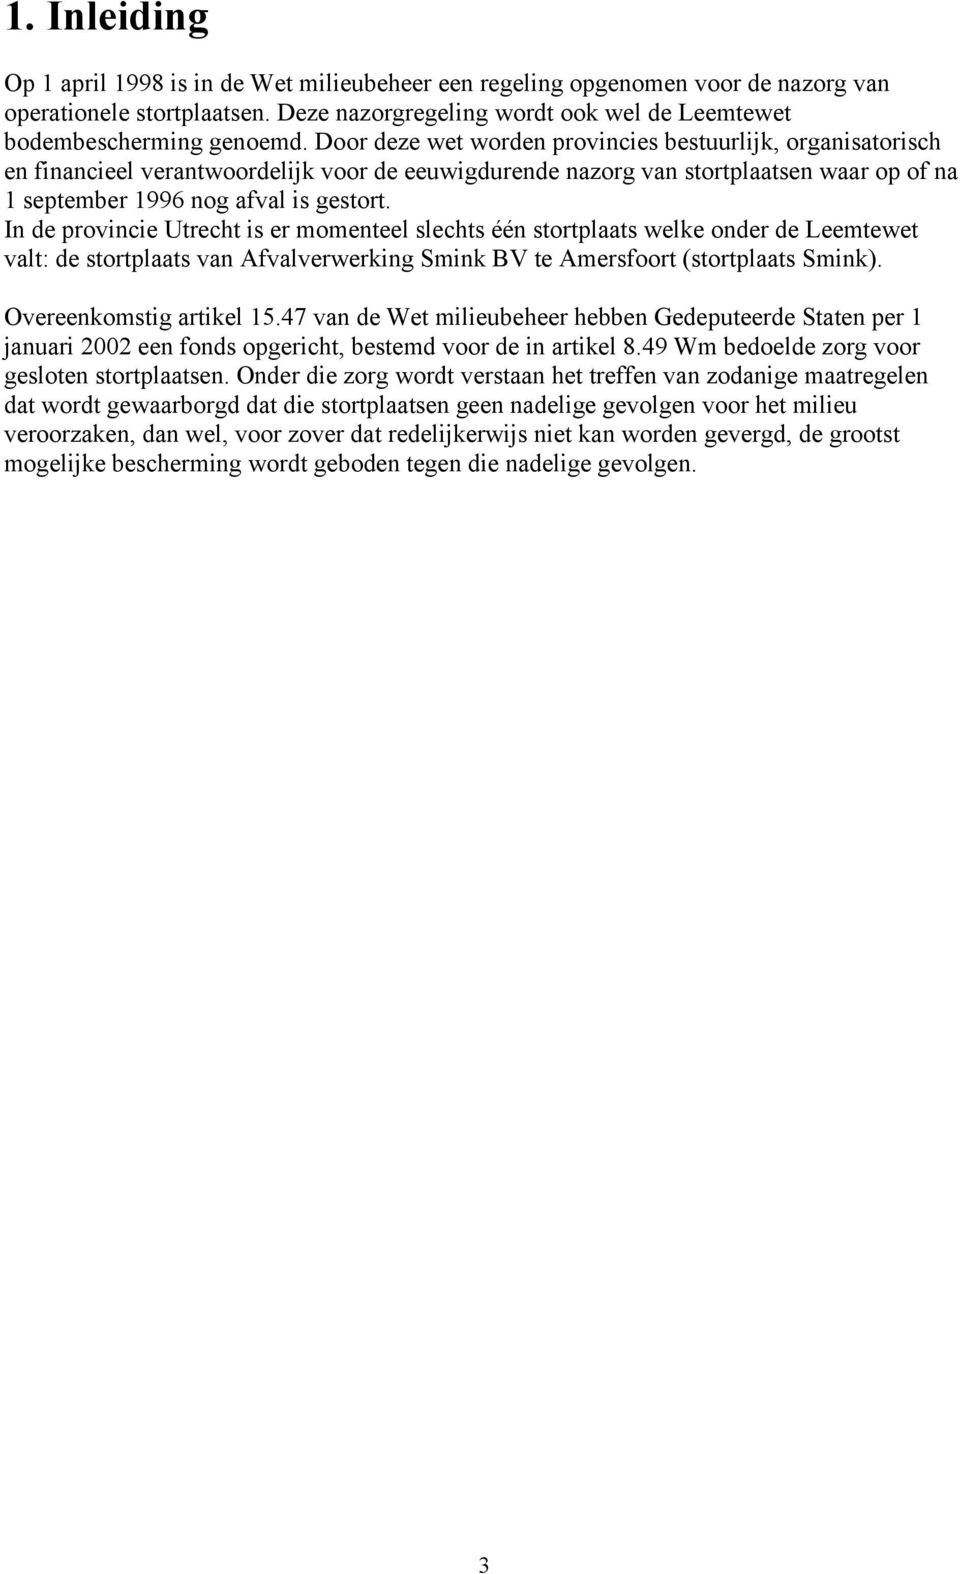 In de provincie Utrecht is er momenteel slechts één stortplaats welke onder de Leemtewet valt: de stortplaats van Afvalverwerking Smink BV te Amersfoort (stortplaats Smink). Overeenkomstig artikel 15.